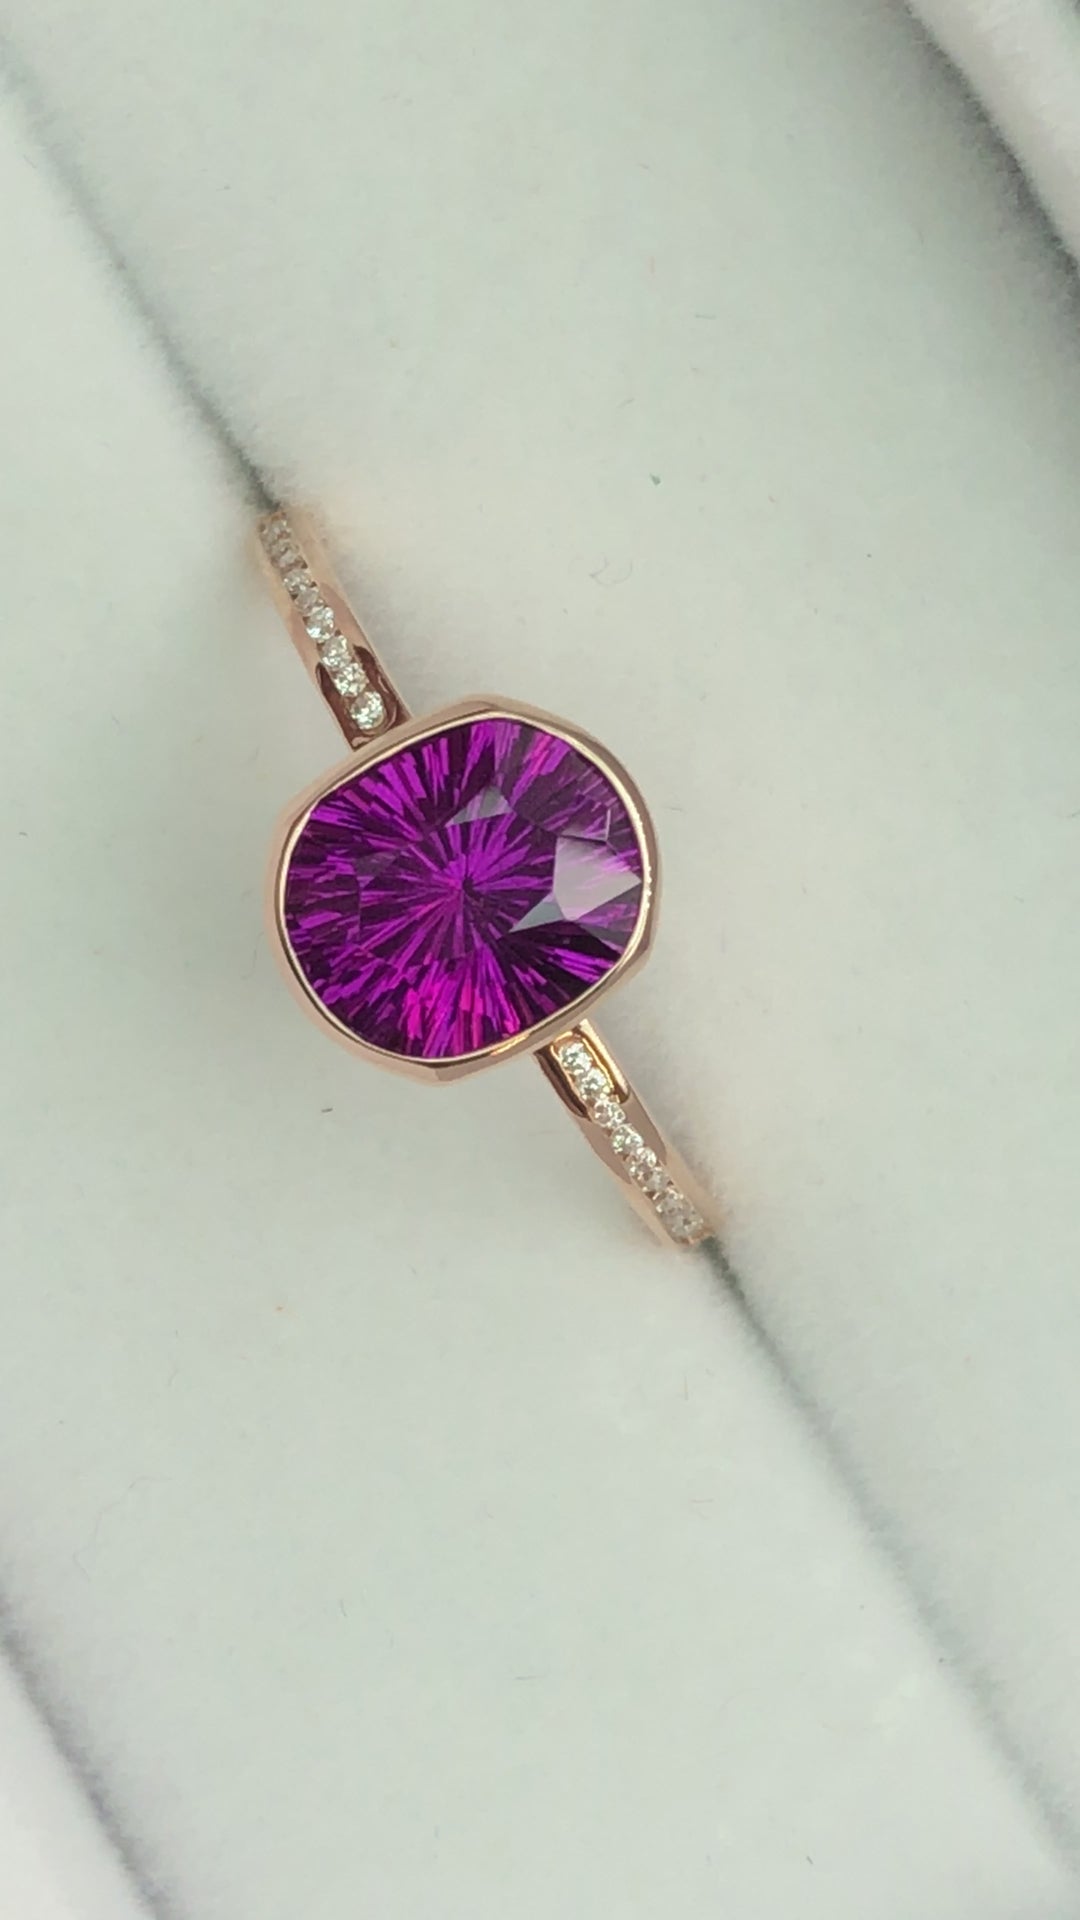 Sertissage de bague de lunette en or rose accentué de canal de diamants - Représenté avec un grenat violet taille fantaisie (serti uniquement, pierre centrale vendue séparément)